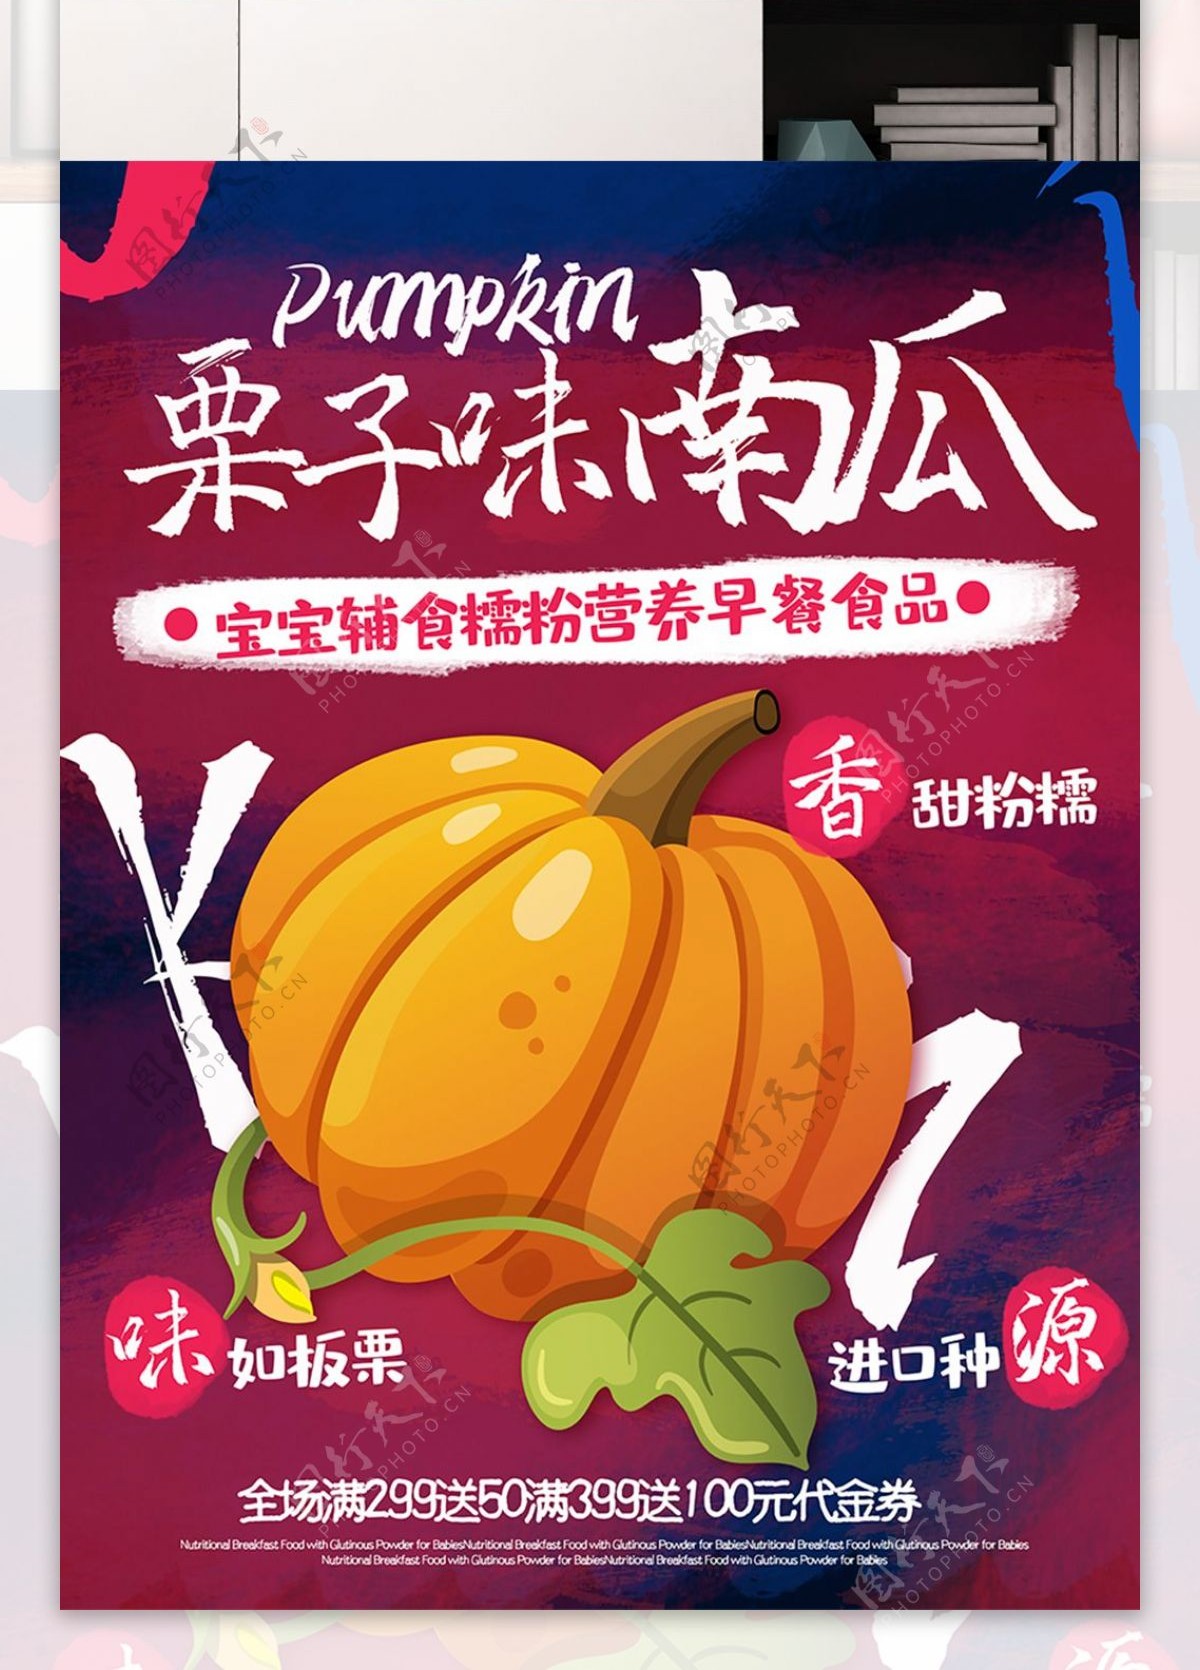 简约中国风美食食品栗子味南瓜海报